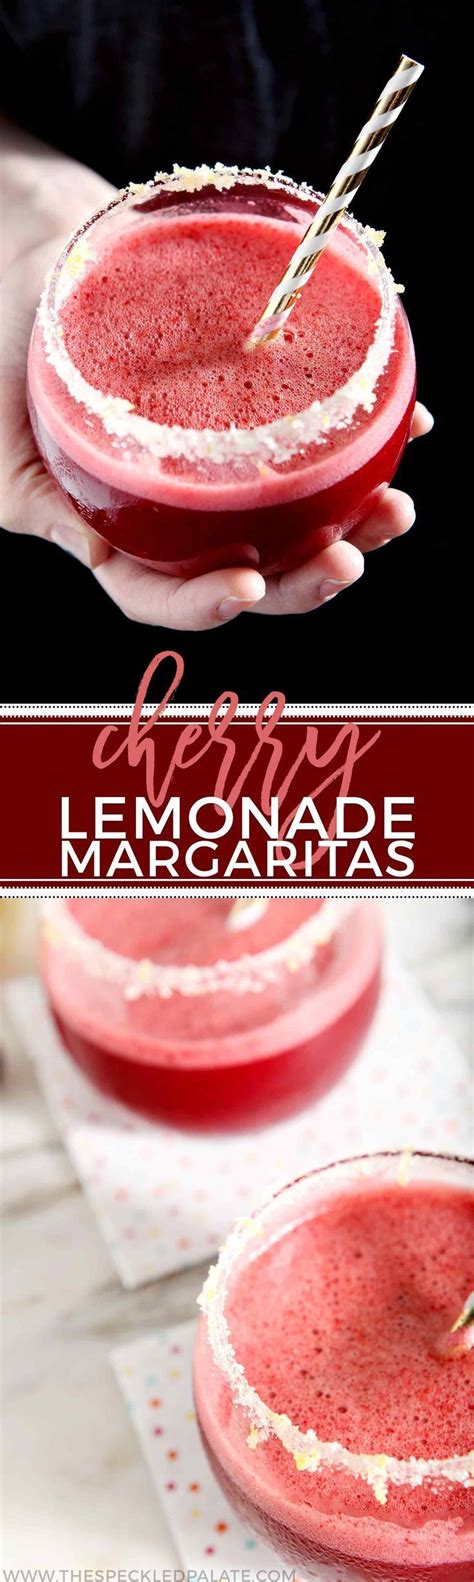 Cherry Lemonade Margaritas Recipe Yummy Drinks Cherry Lemonade Food